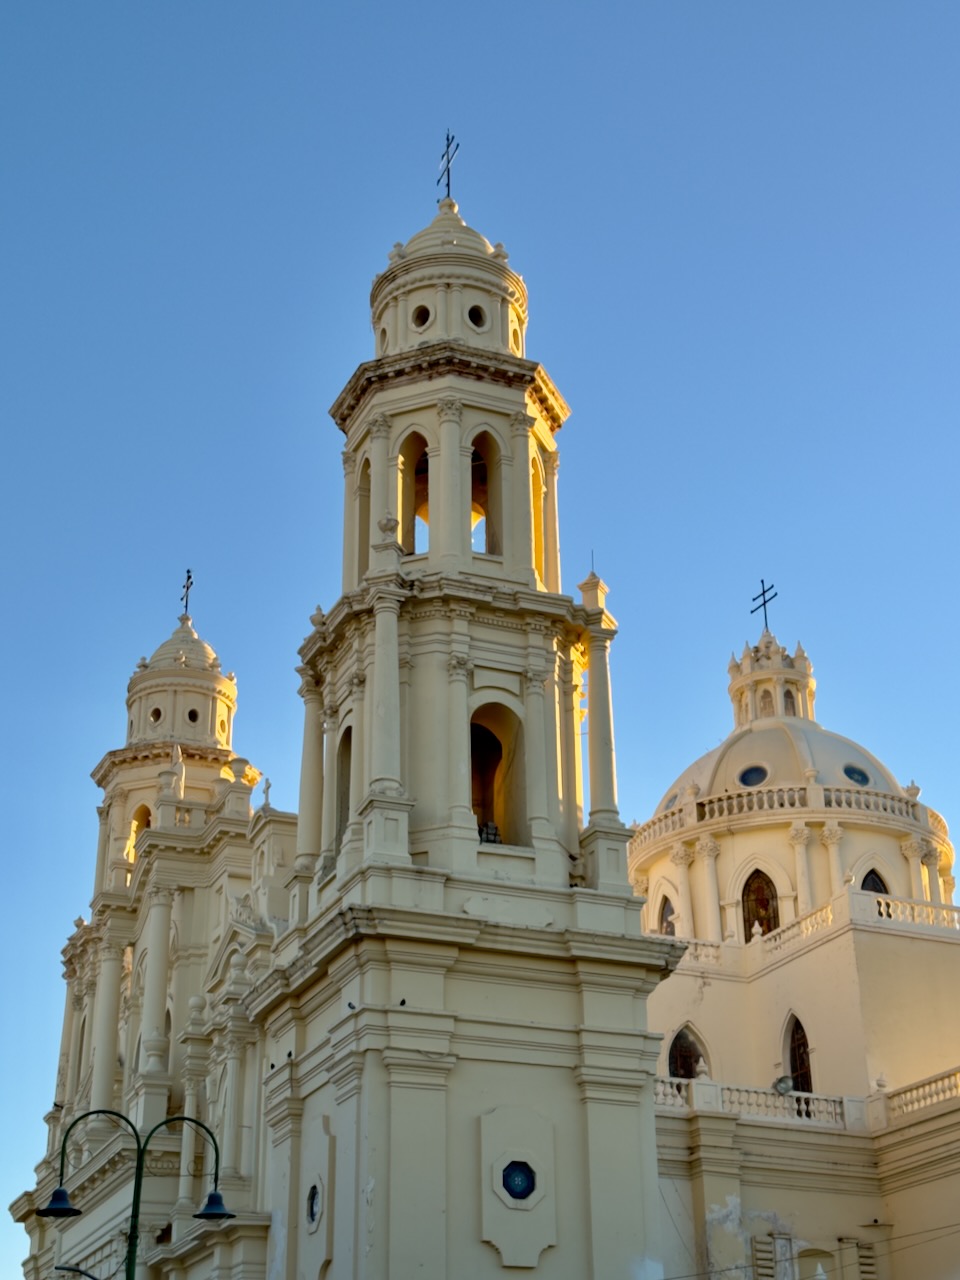 Hermosillo, Mexico